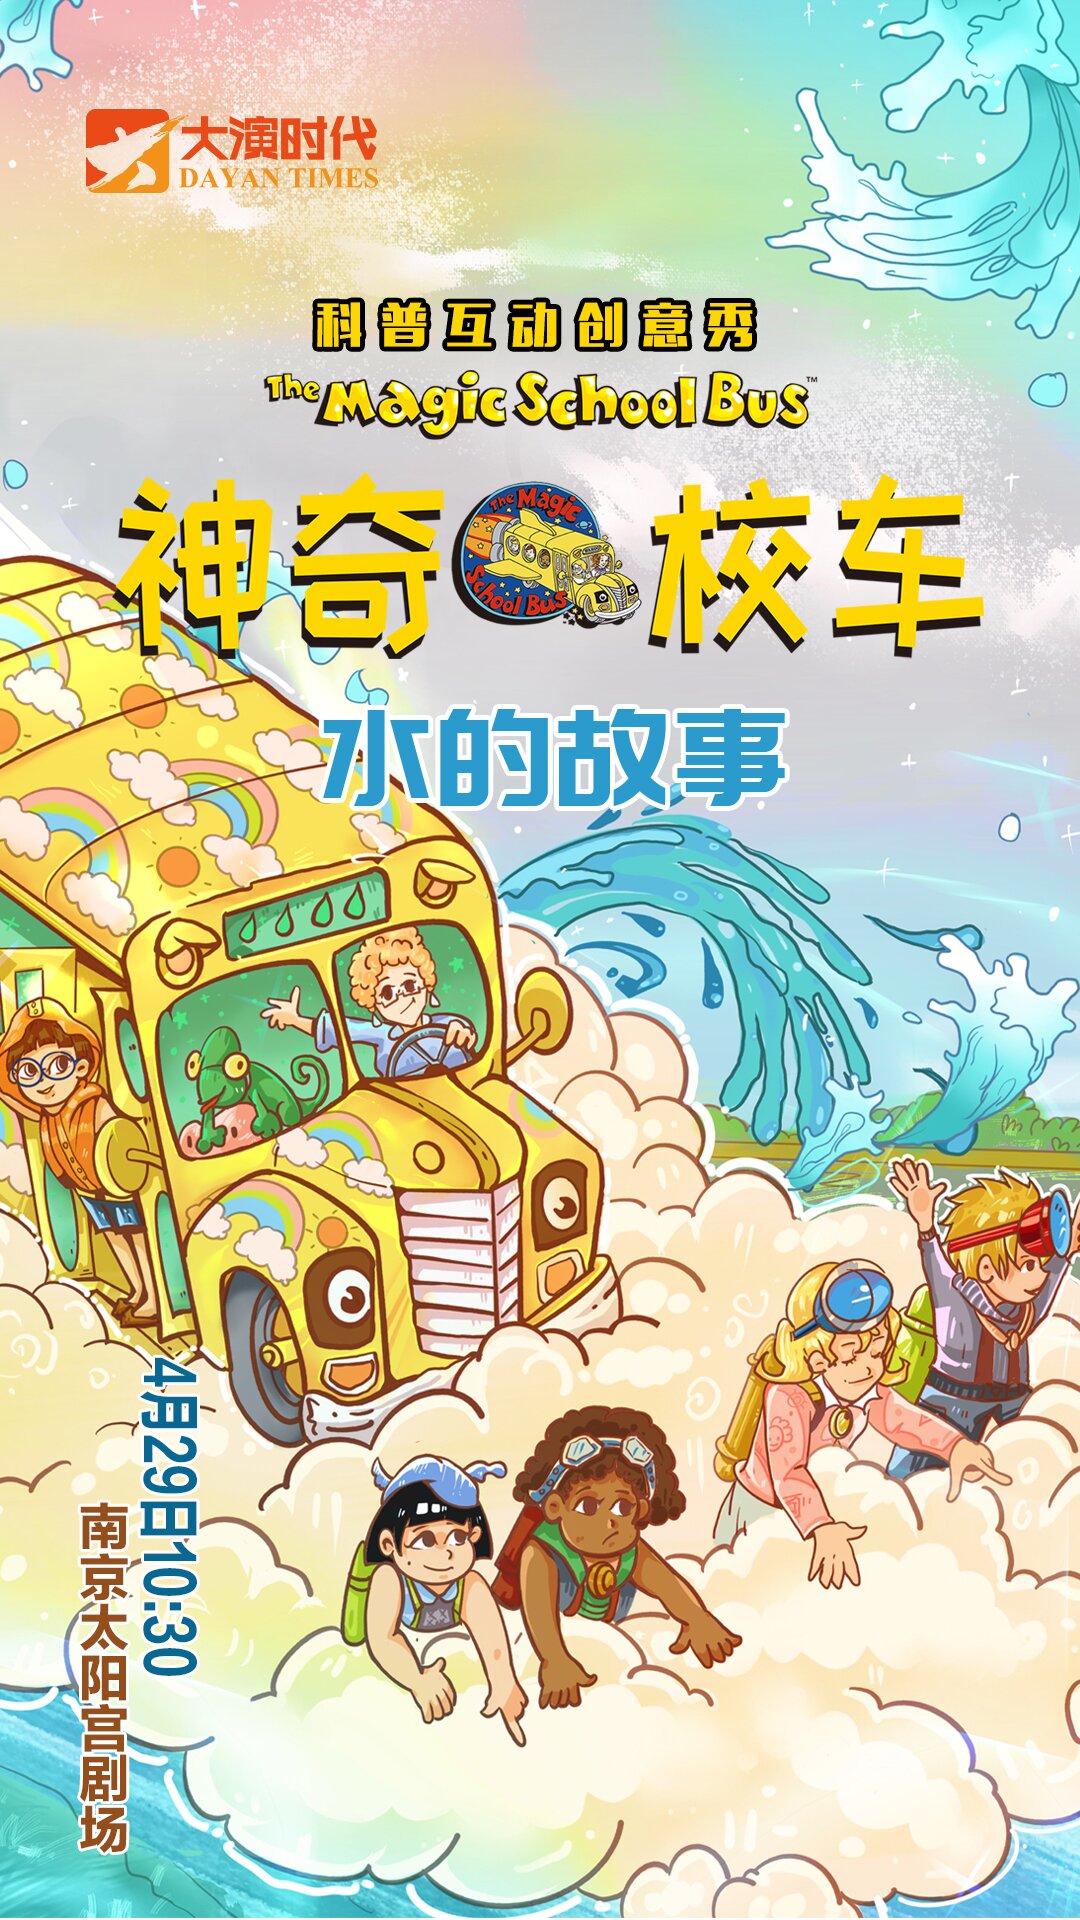 【南京】『大演时代』原版授权科普亲子音乐剧《神奇校车・水的故事》